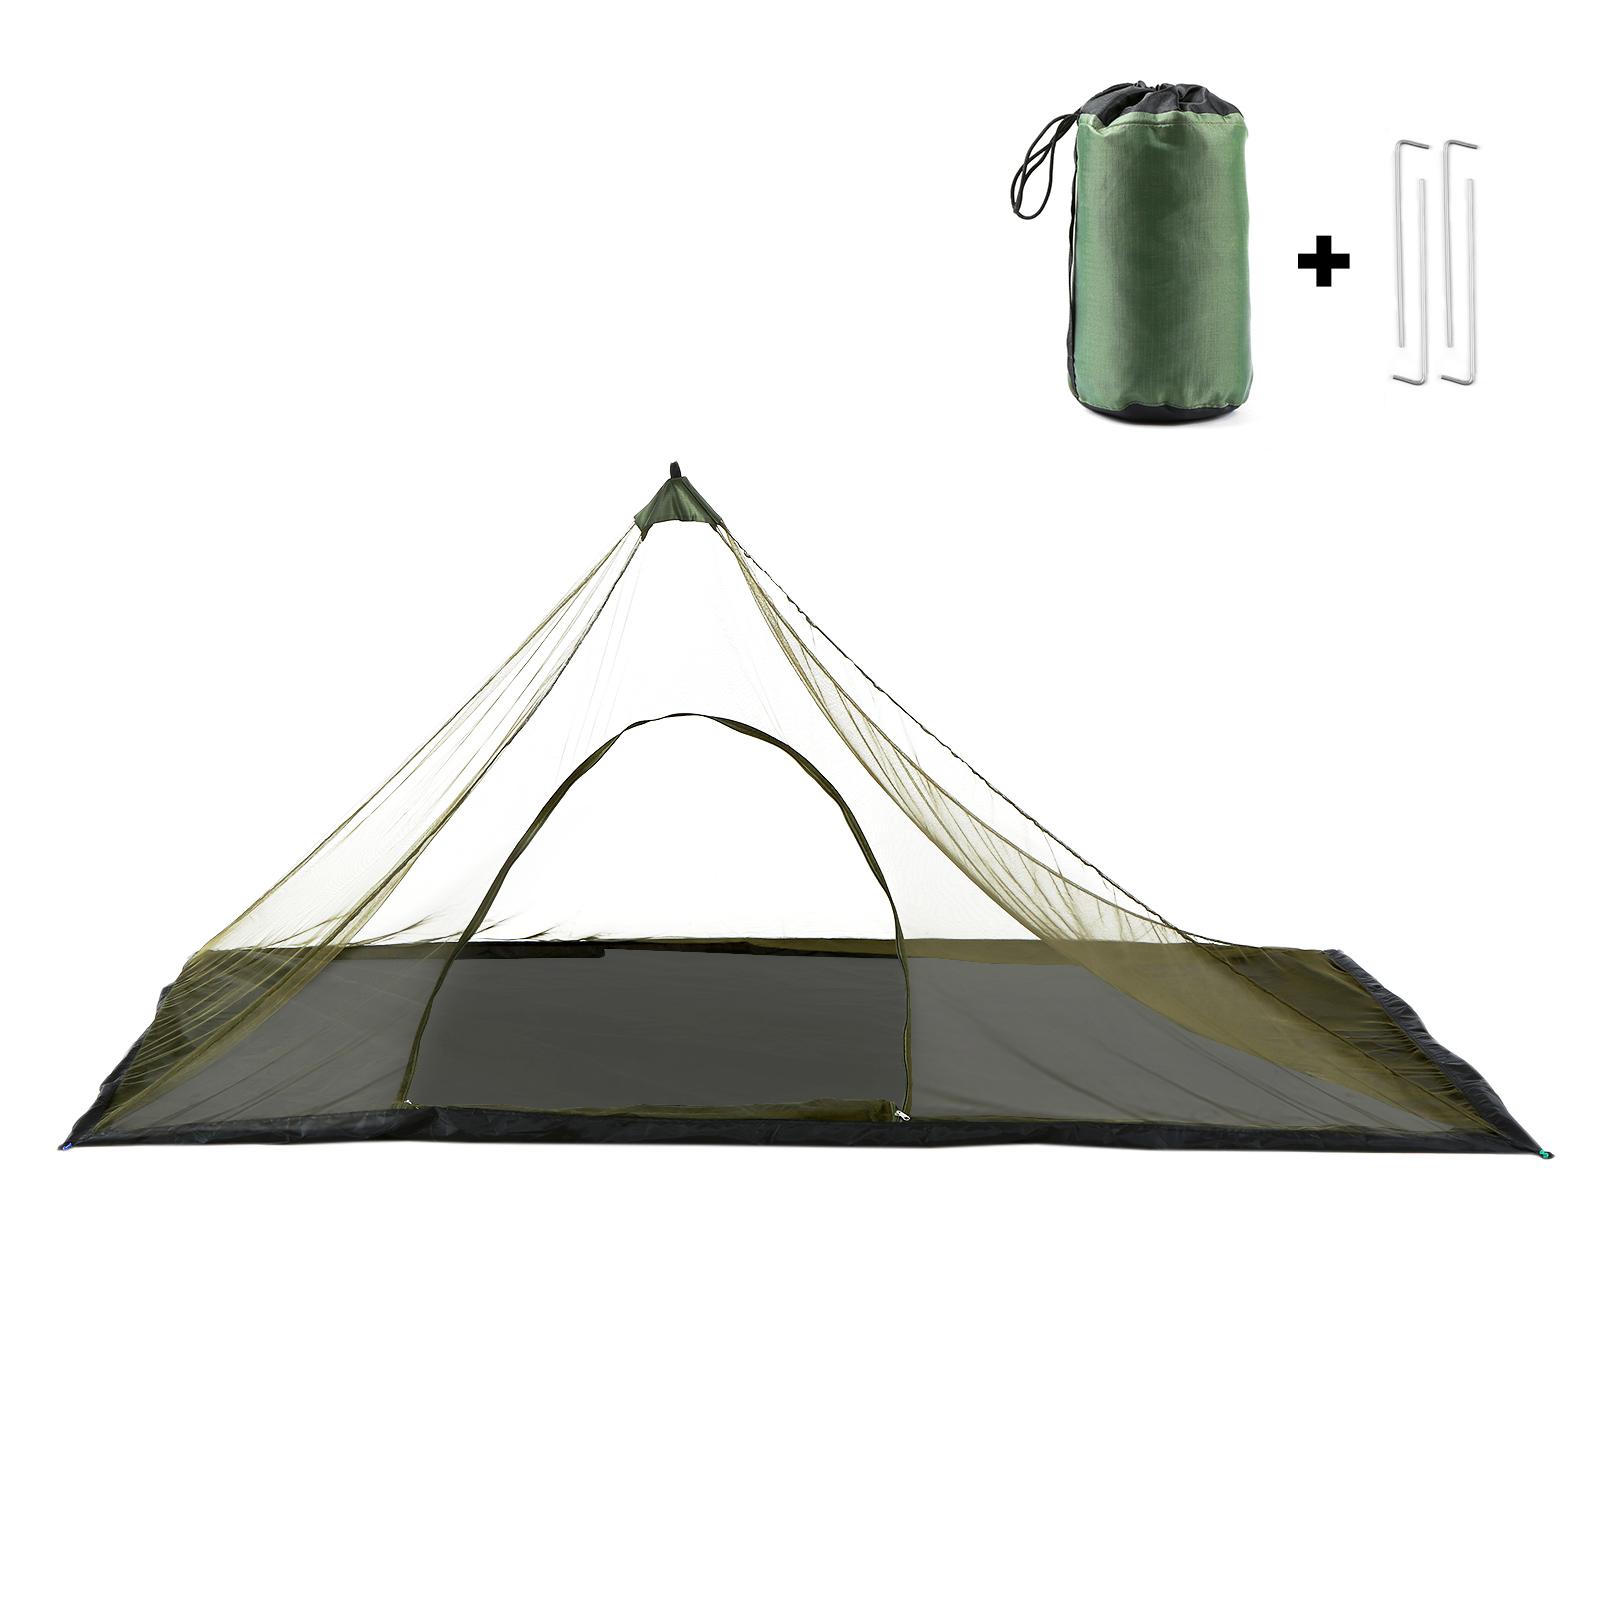 Lều cắm trại có túi đựng, chống nước, để đi dã ngoại, cắm trại, câu cá